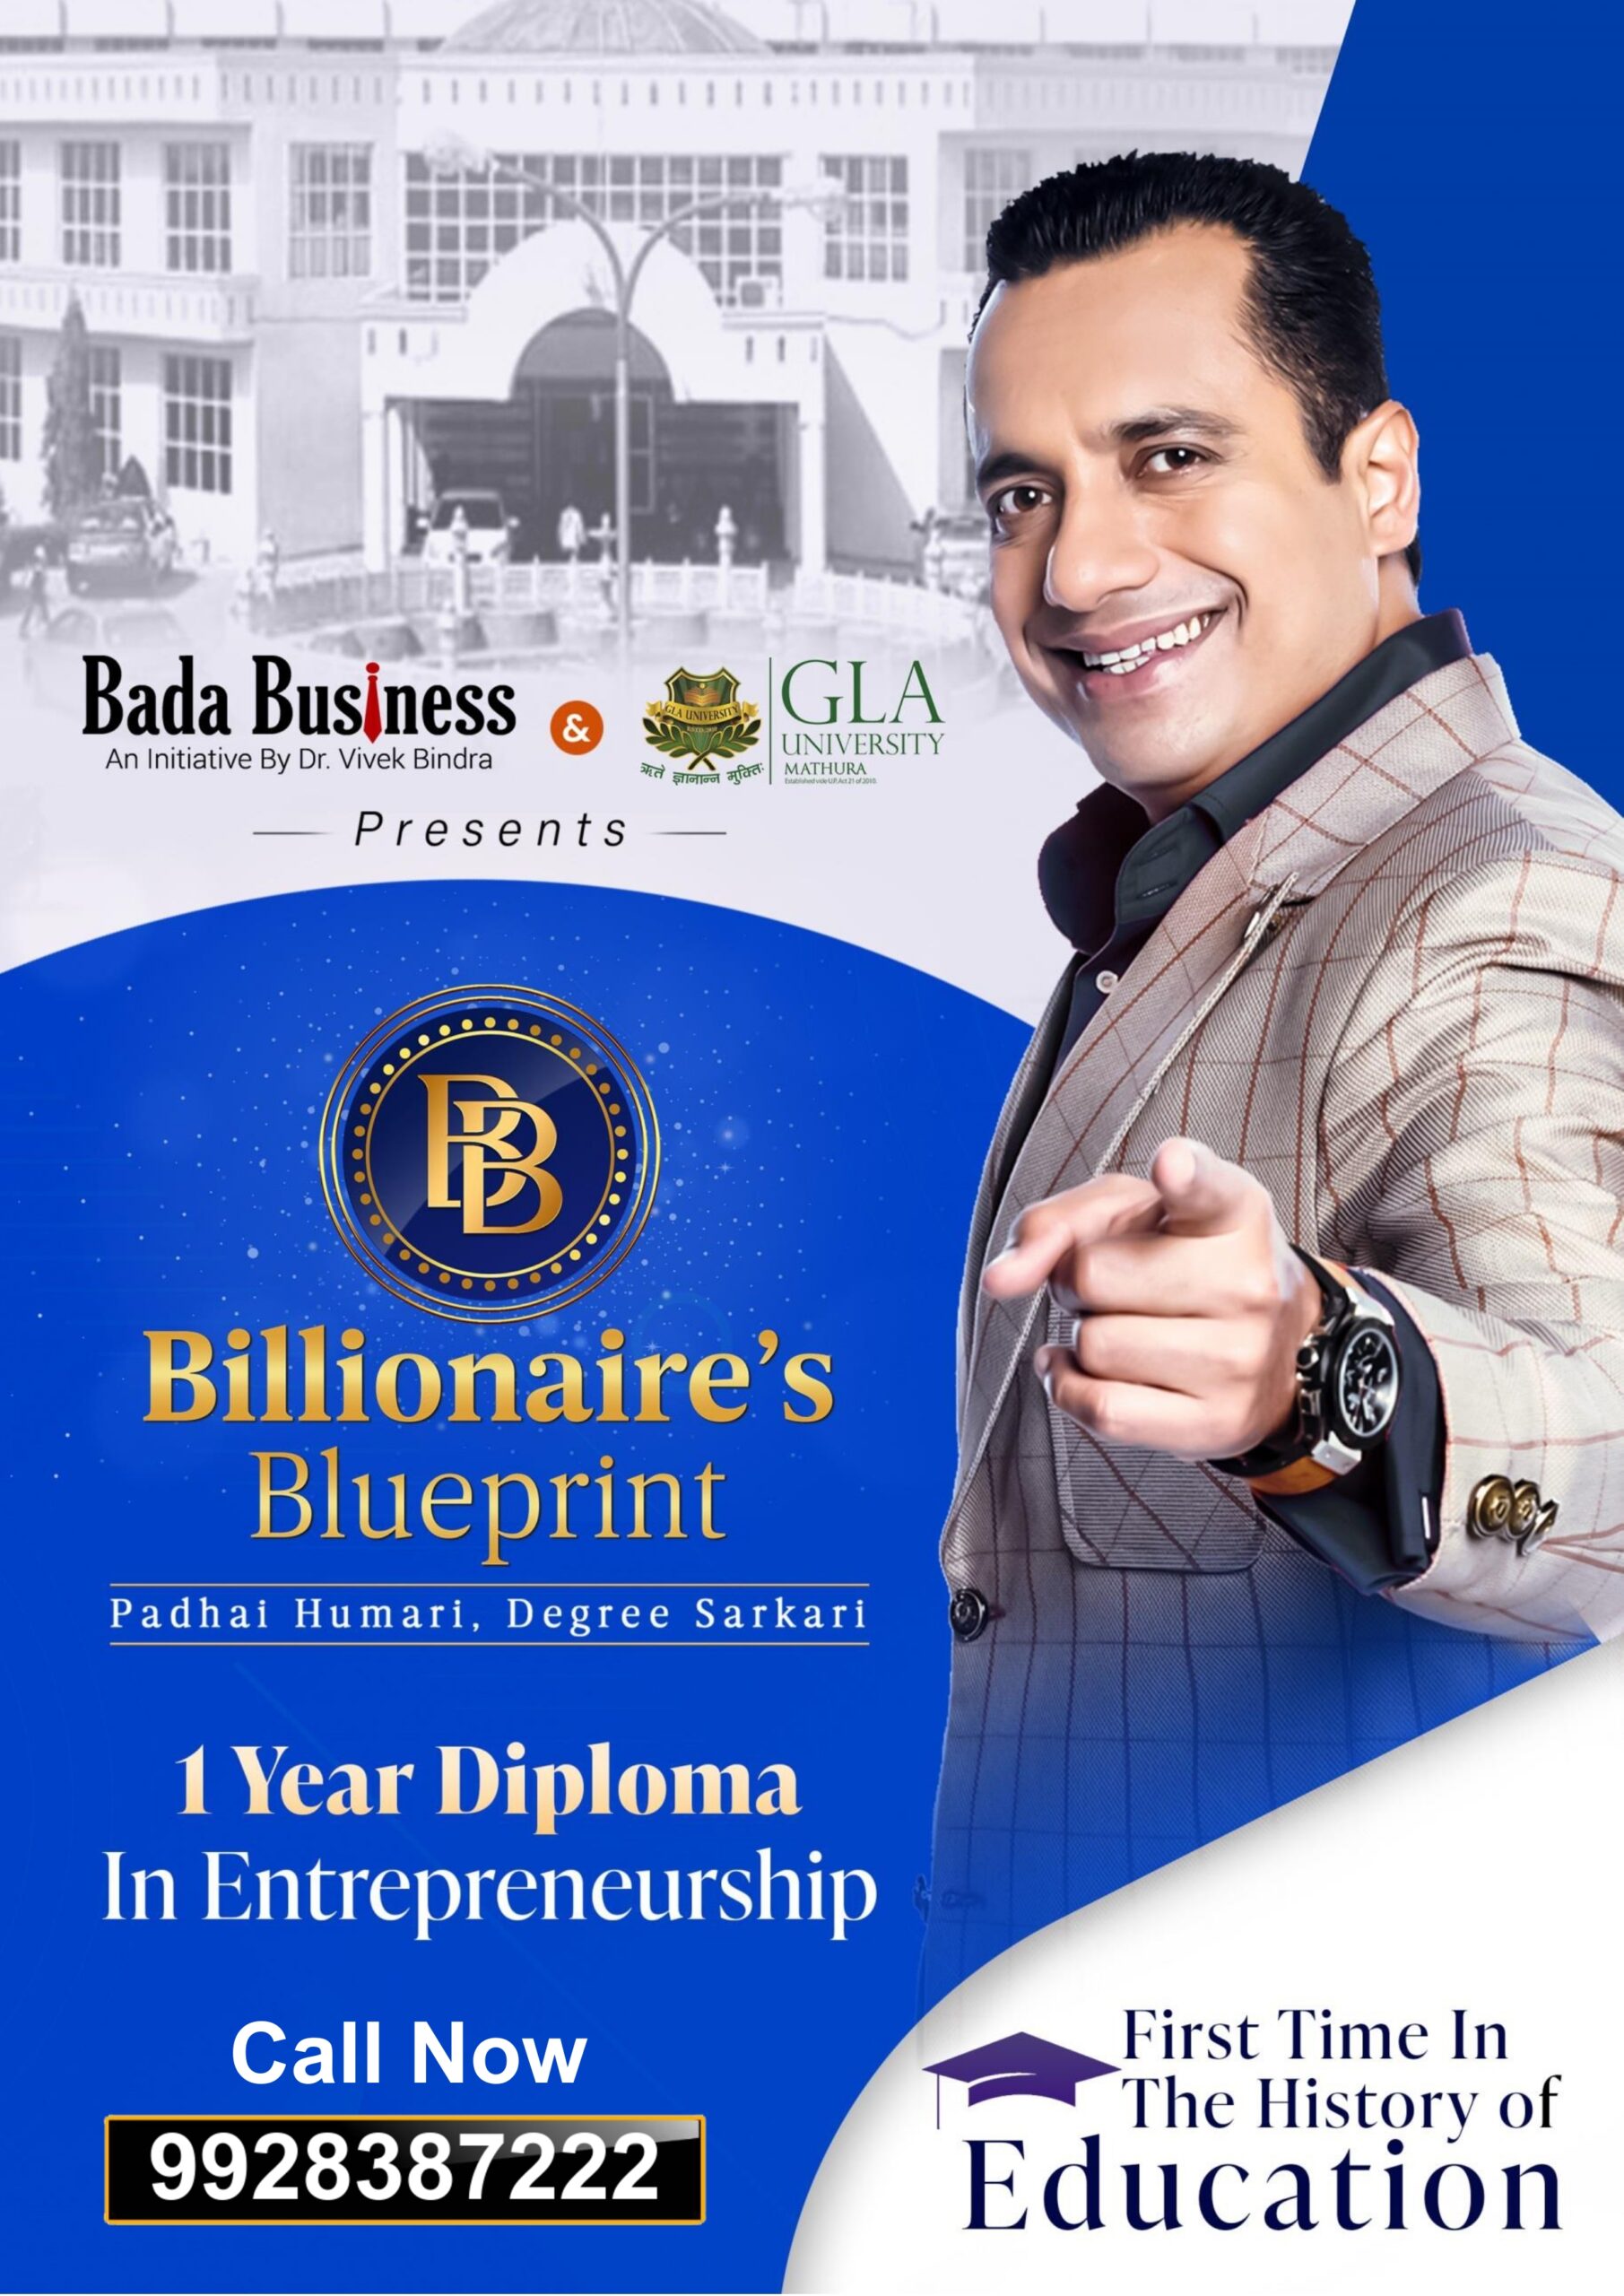 Billionaire's Blueprint Program By Bada Business - UGC Approved Entrepreneurship Diploma Program